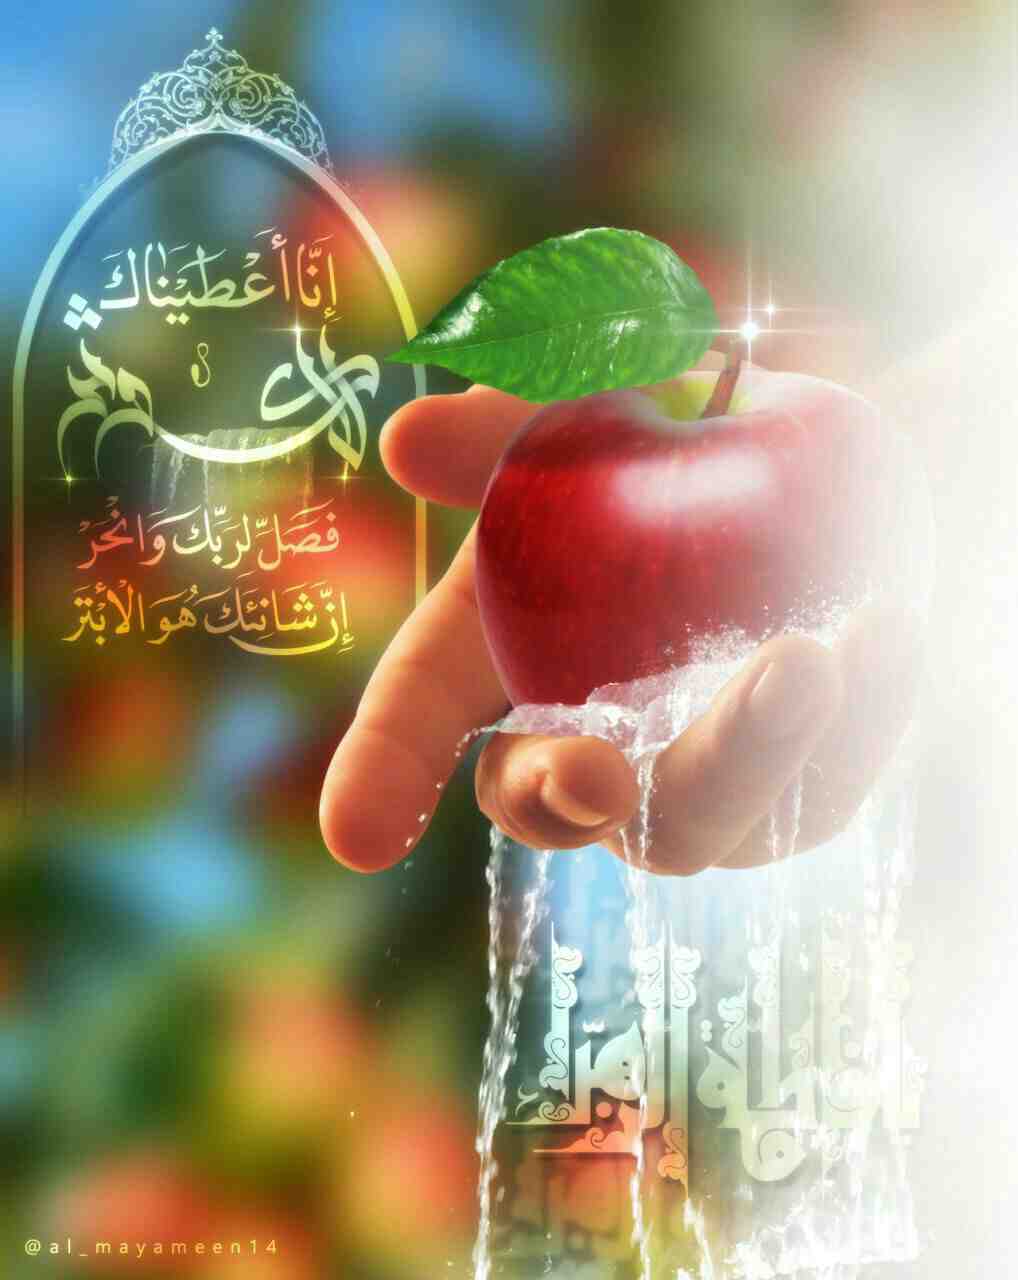 اللهم صلي على محمد وال محمد شجرة النبوة